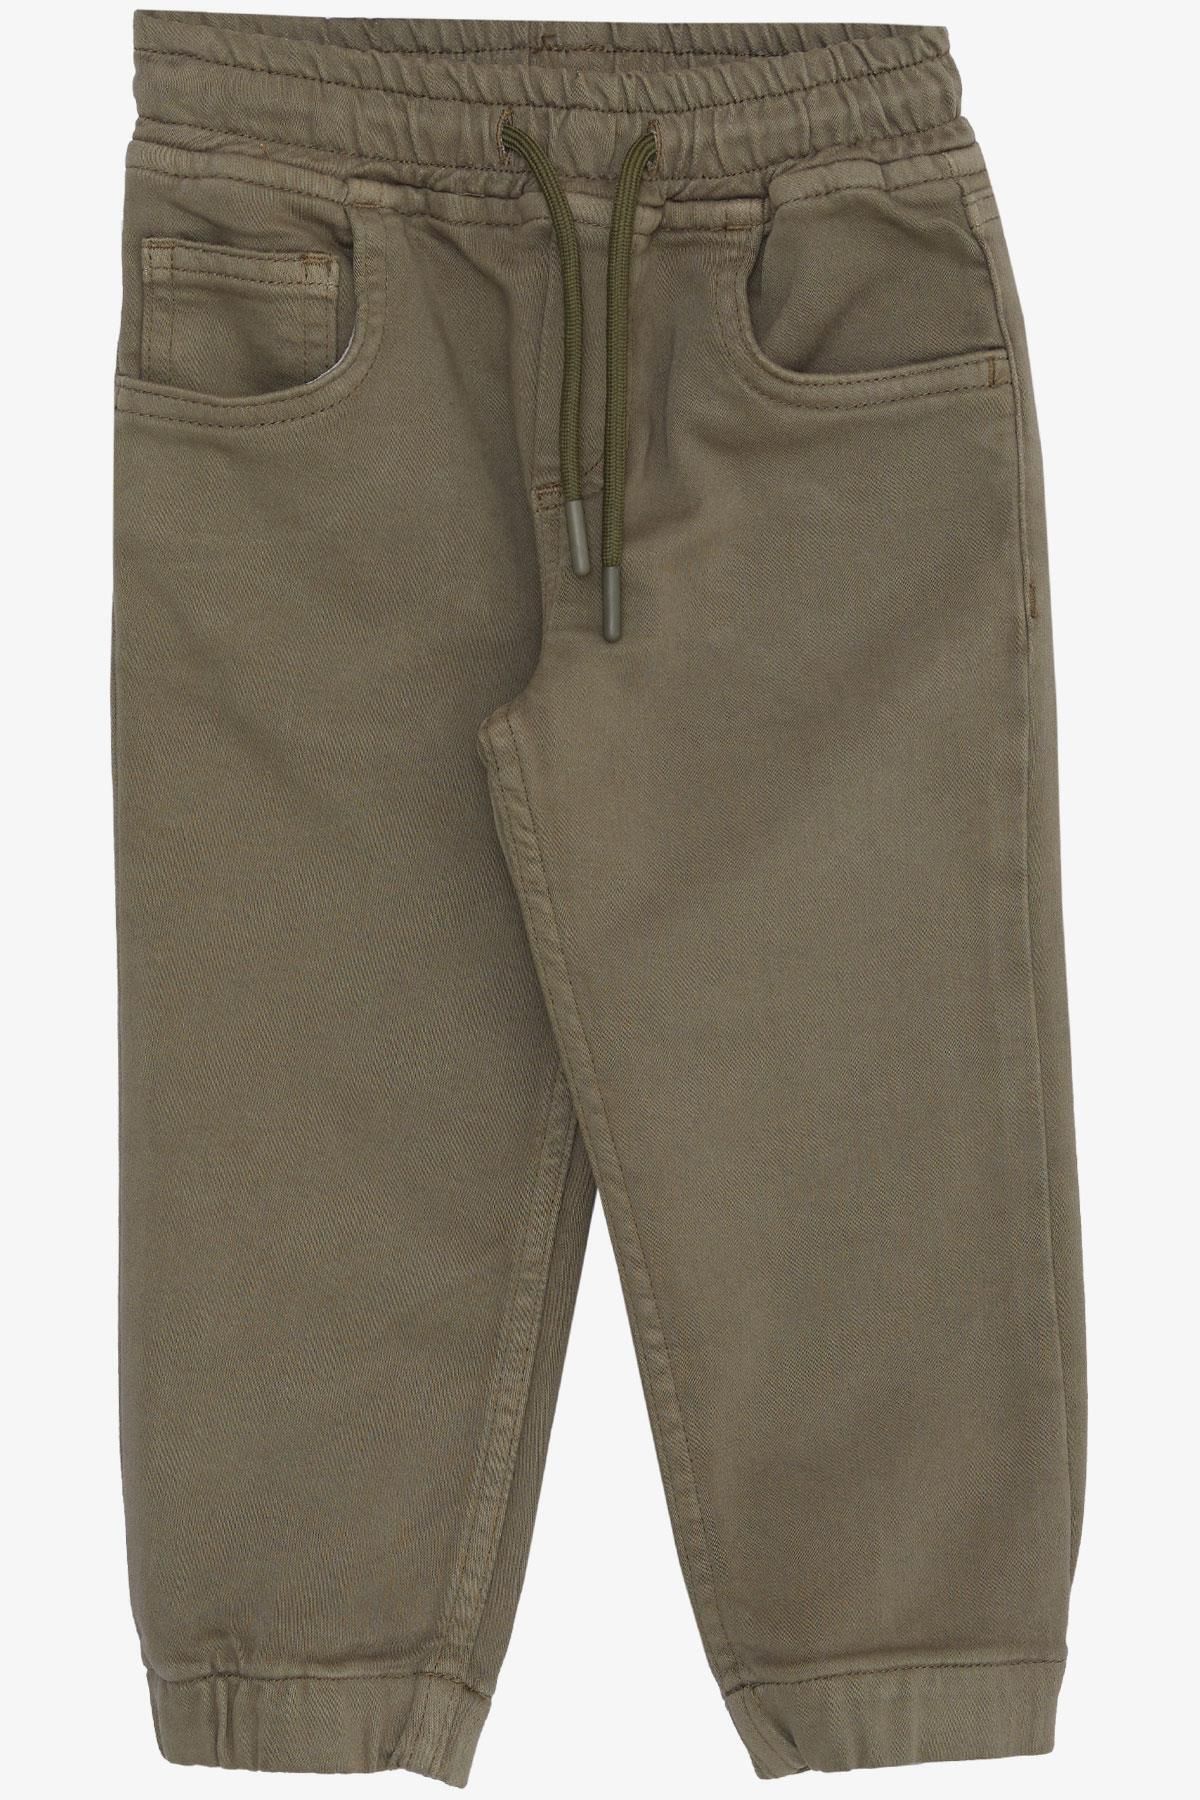 Breeze Erkek Çocuk Pantolon Bağcıklı Beli Paçası Lastikli 1.5-5 Yaş, Koyu Haki Yeşil